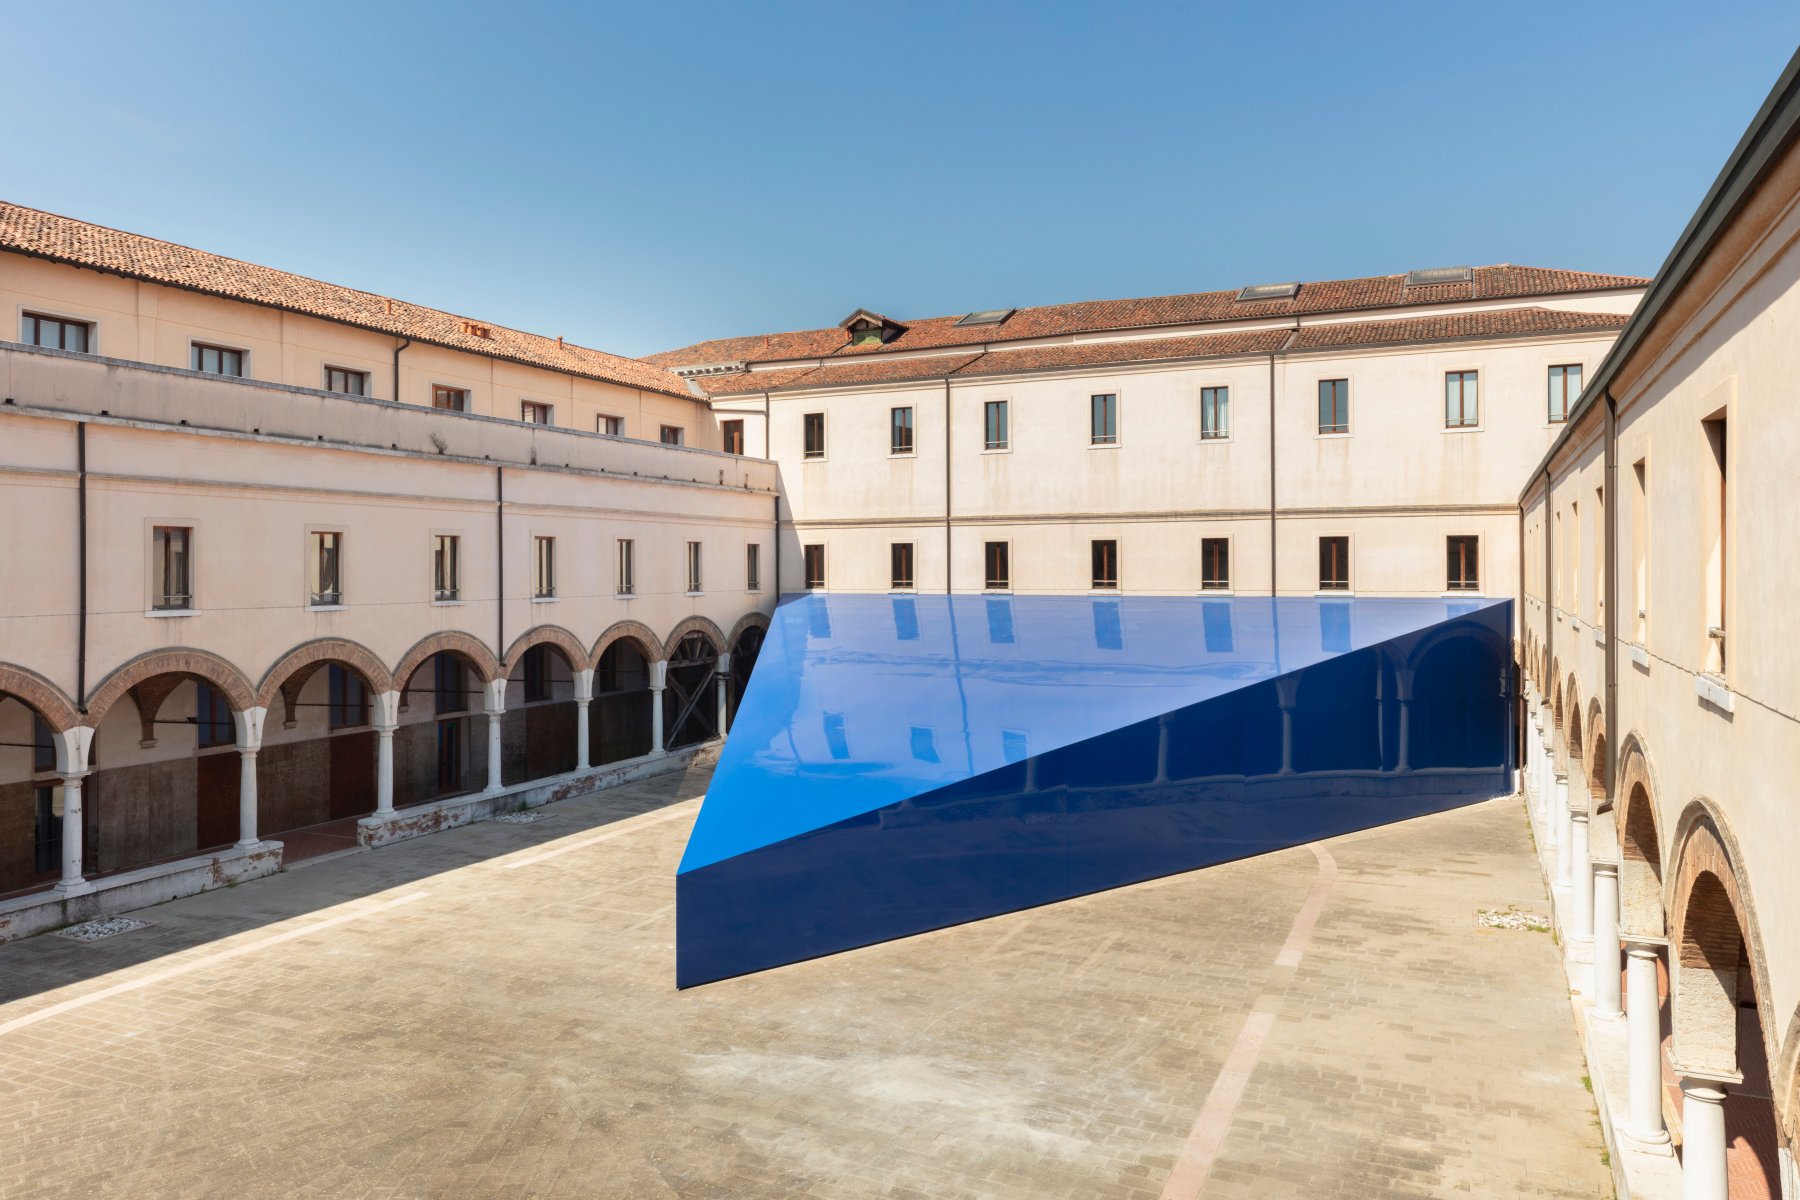 LAS-Art-Foundation-or-UNA-UNLESS-Pavilion-at-Accademia-di-Belle-Arti-di-Venezia-or-2.jpg